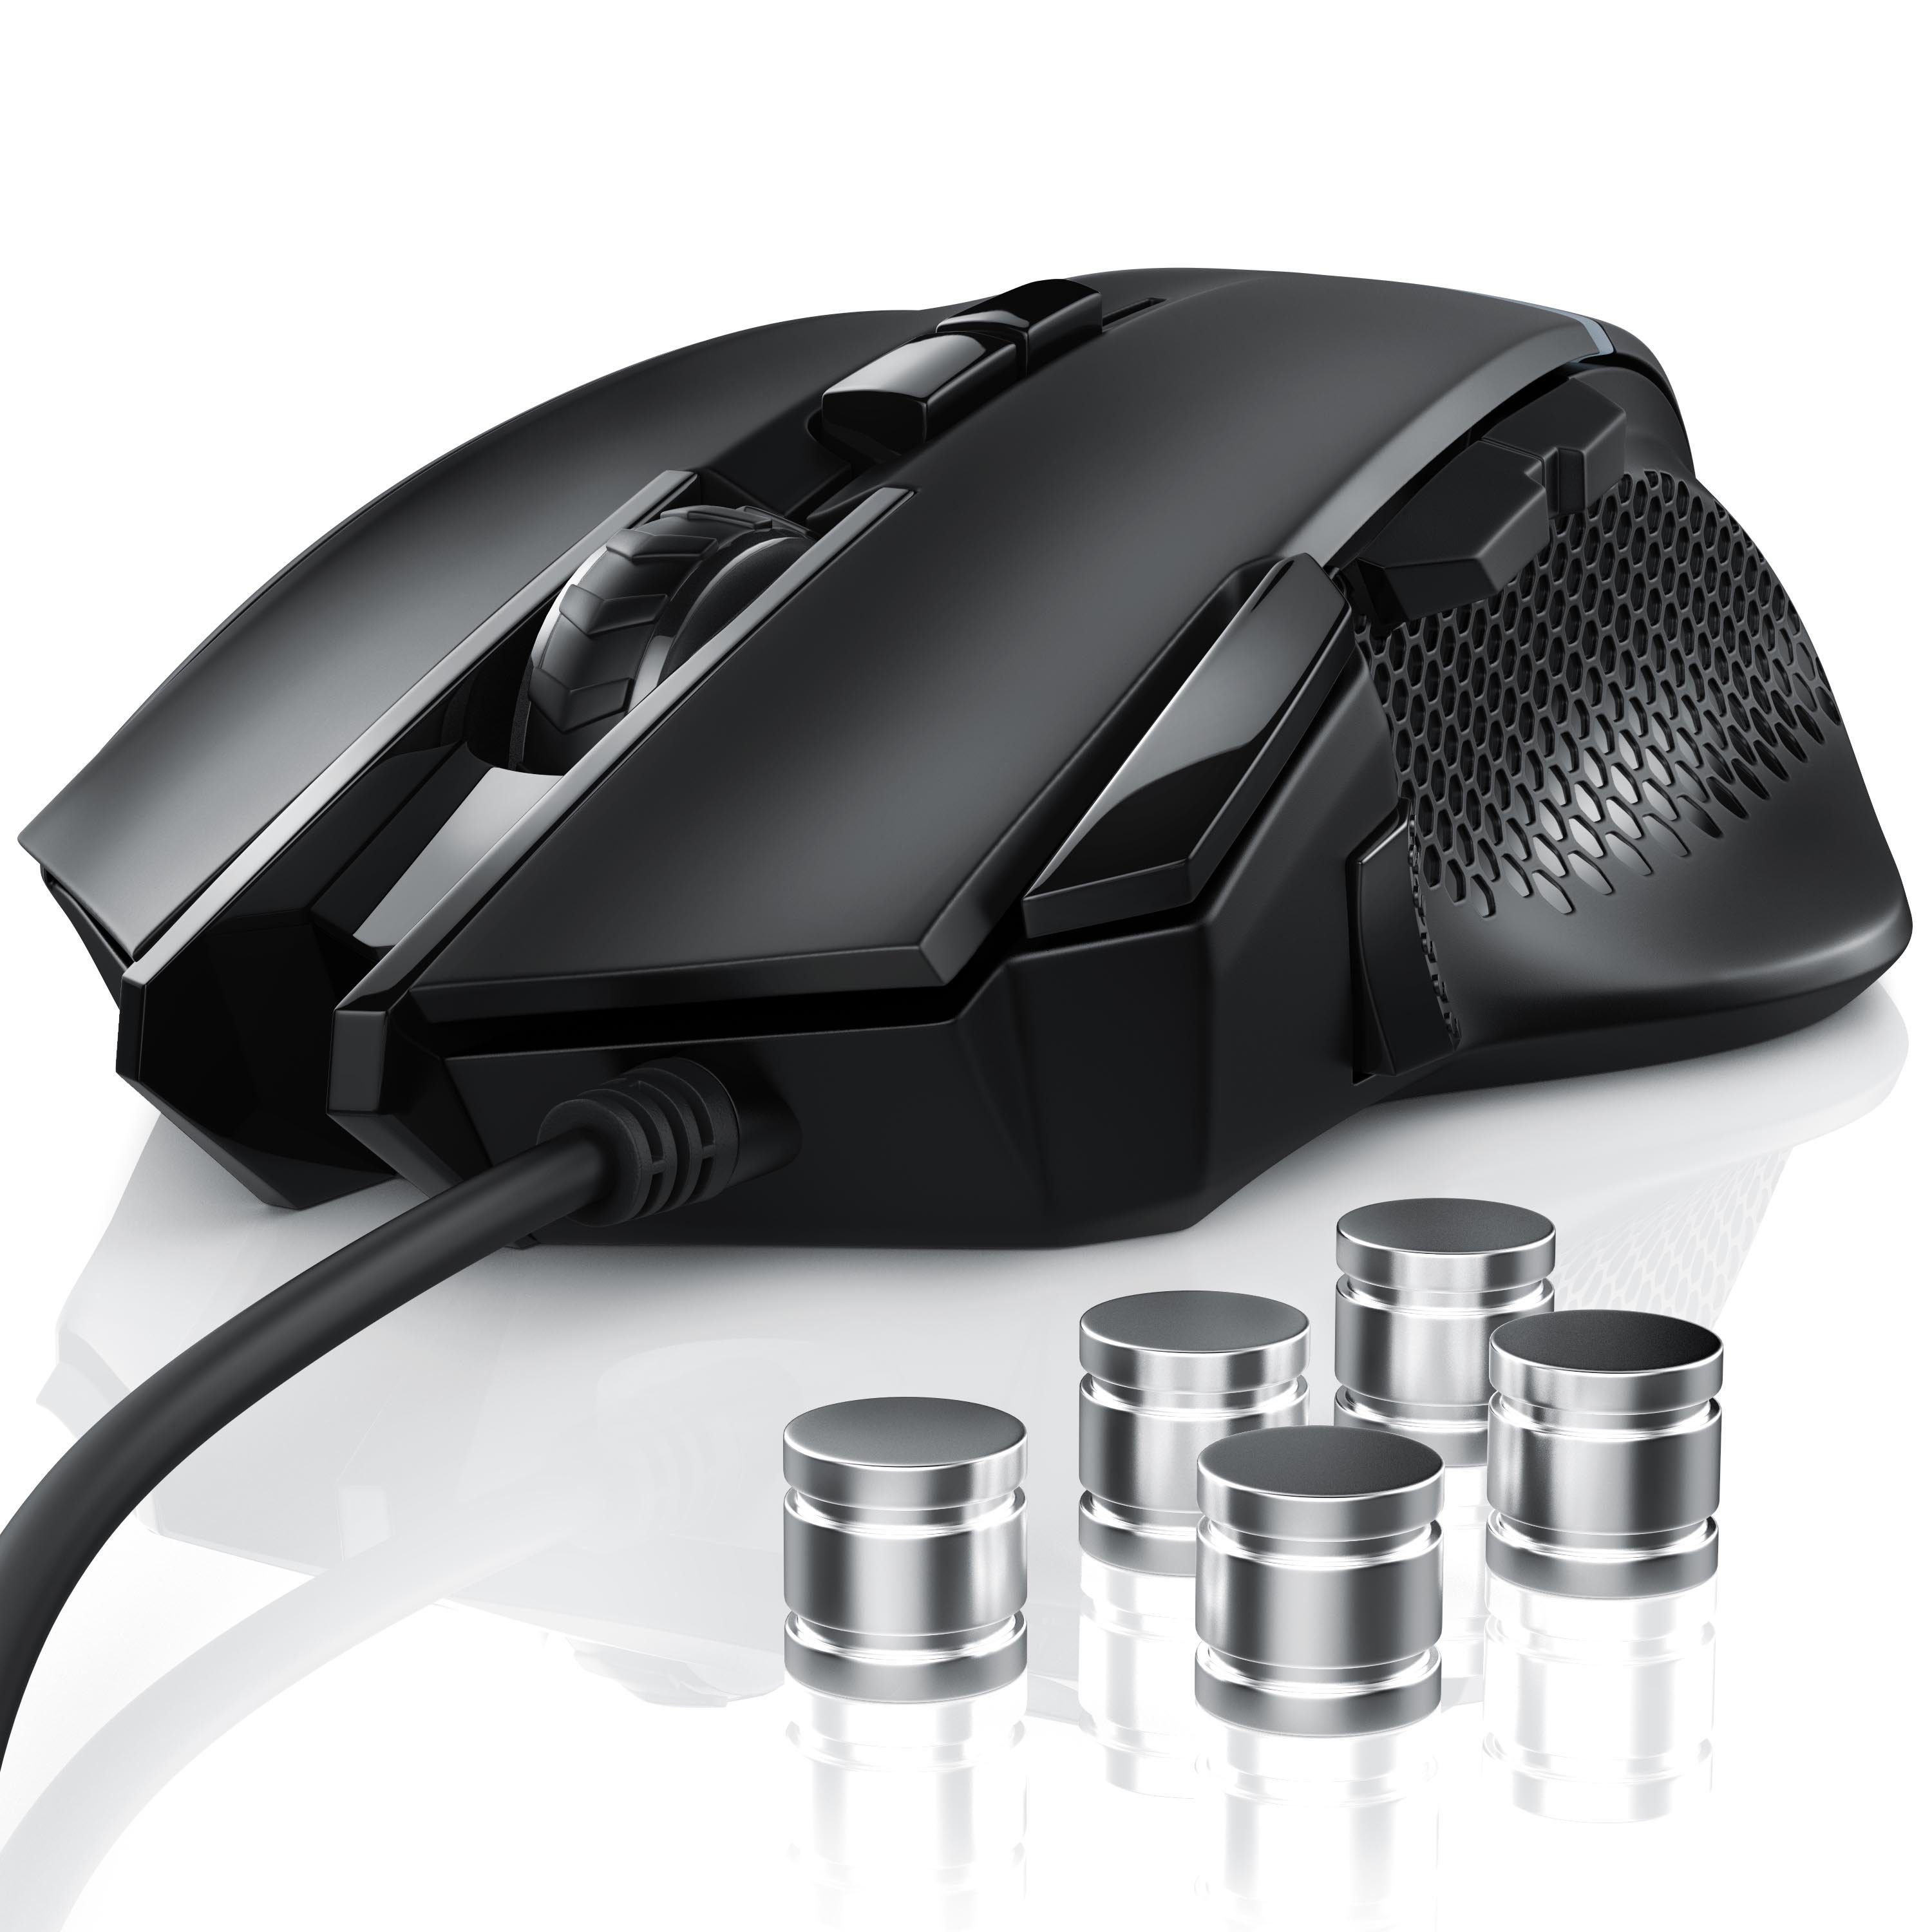 inkl. Gewichten) (kabelgebunden, dpi, wählbar, Gaming-Maus ergonomisch, Mouse dpi, Abtastrate 3200 500 CSL